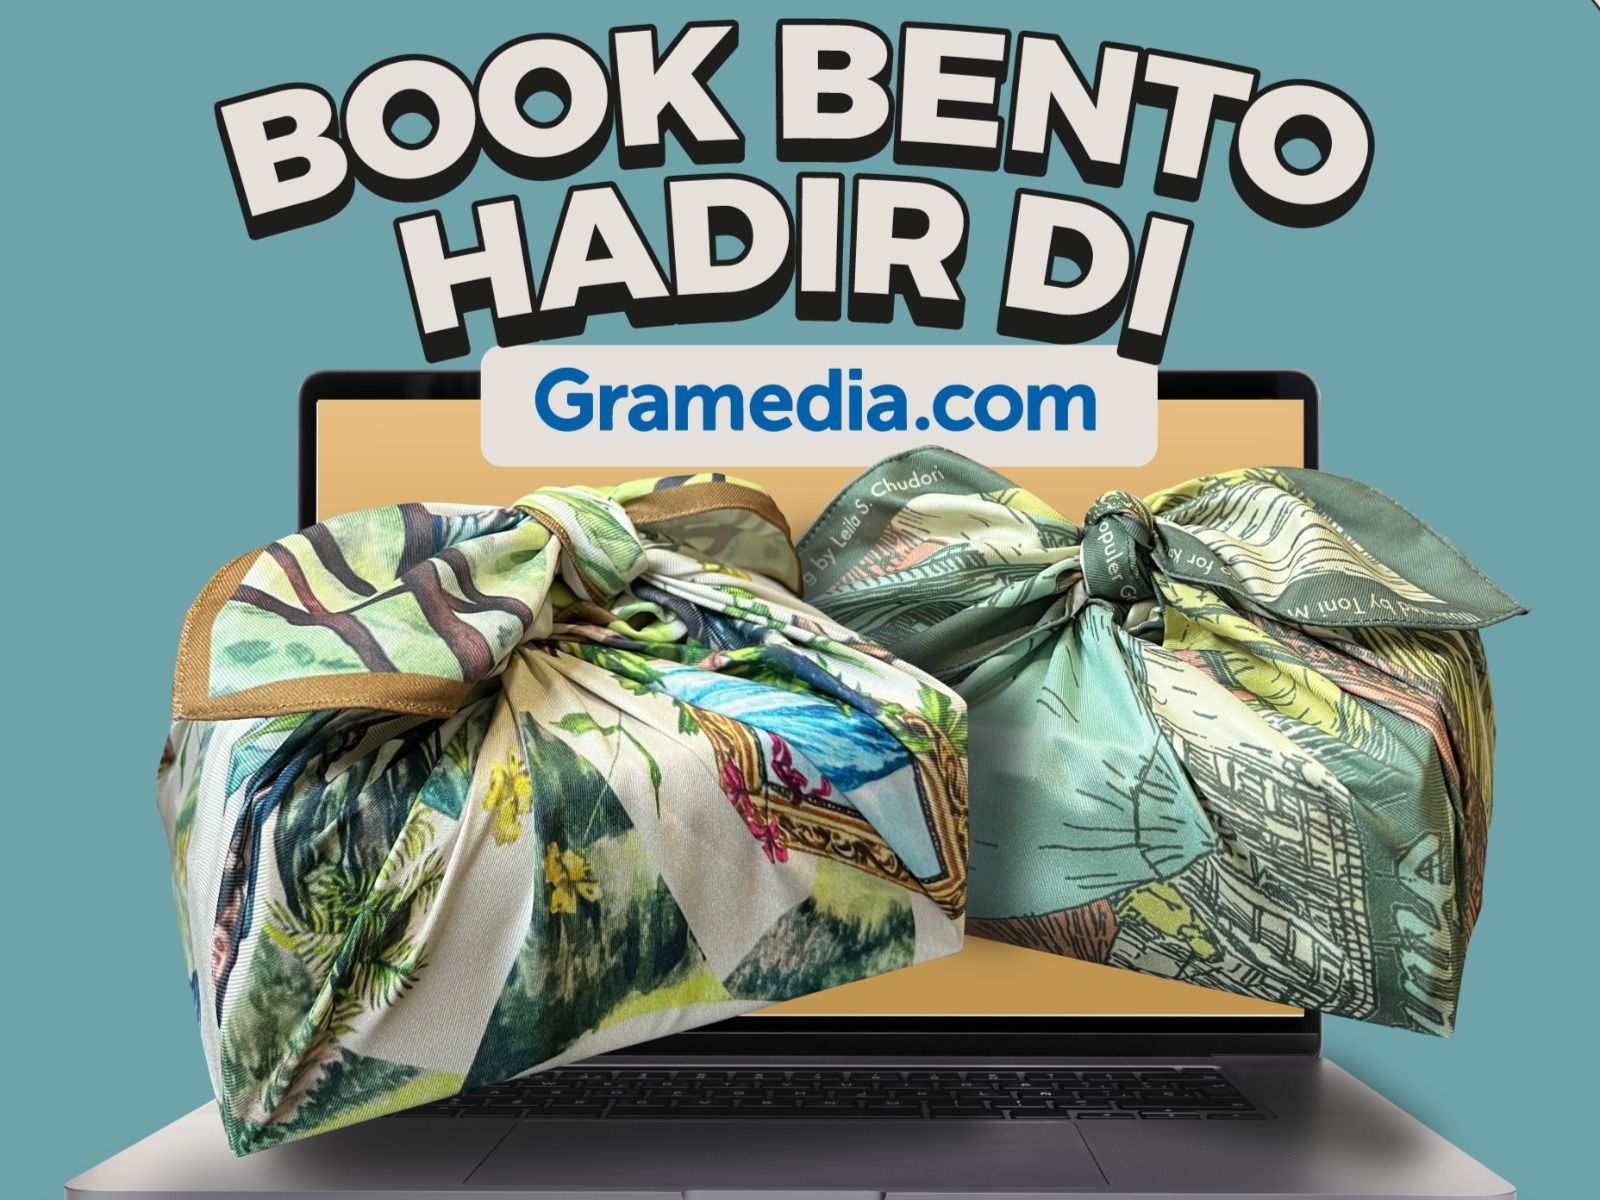 Book Bento Spesial dari Gramedia: Hampers Lebaran Paling Tepat untuk Bibliophile